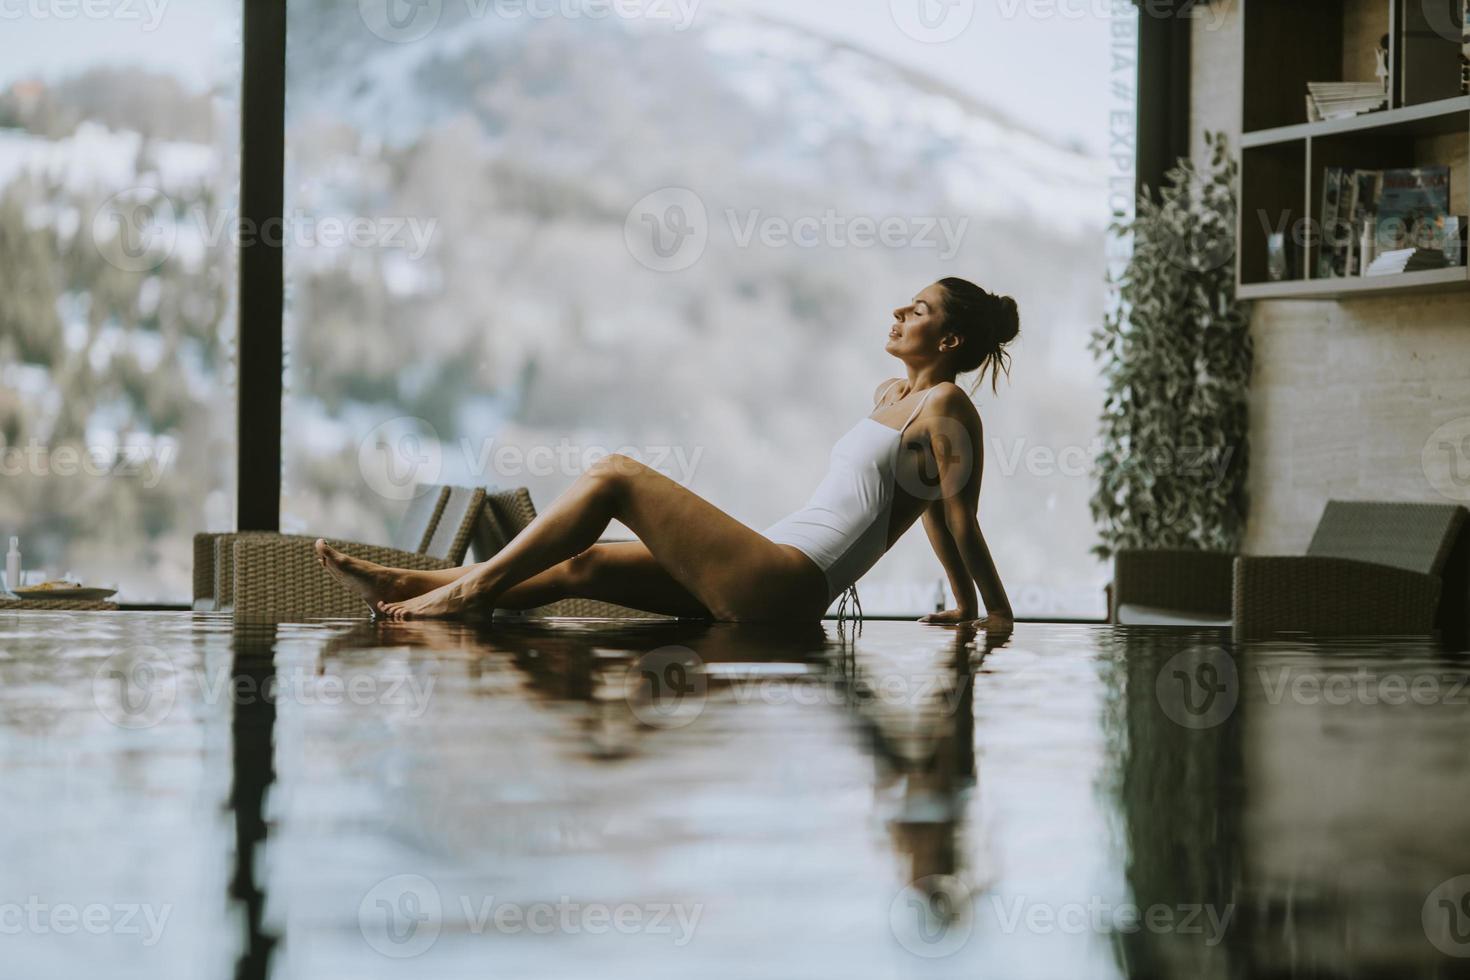 jovem relaxante à beira da piscina de borda infinita no inverno foto